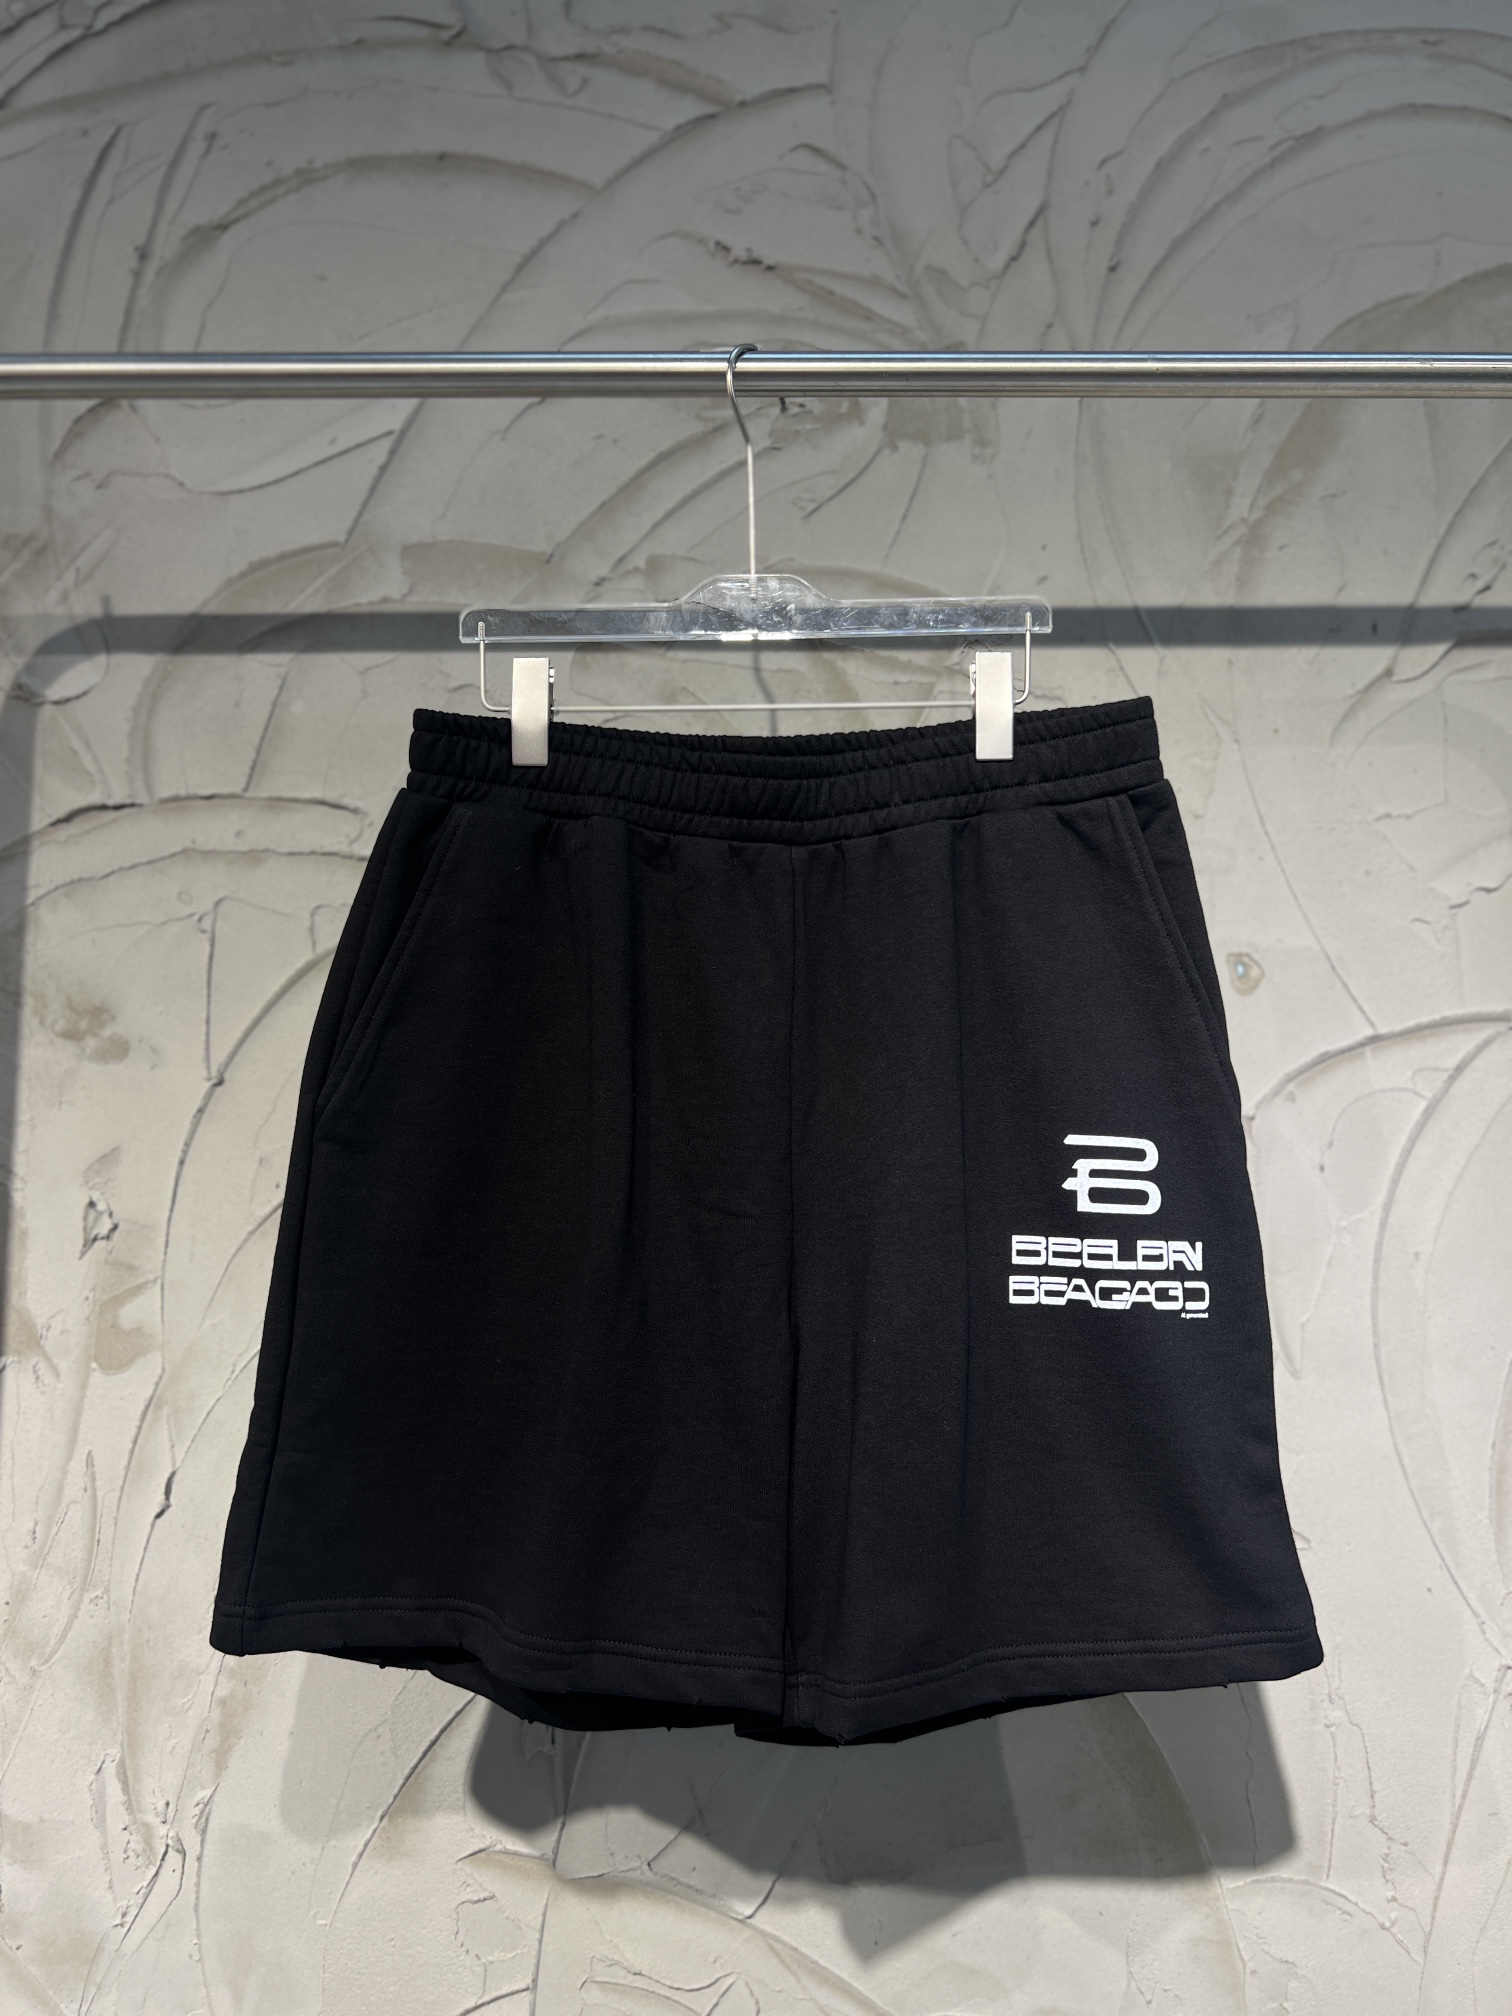 Balenciaga Clothing Shorts Black Printing Knitting Vintage